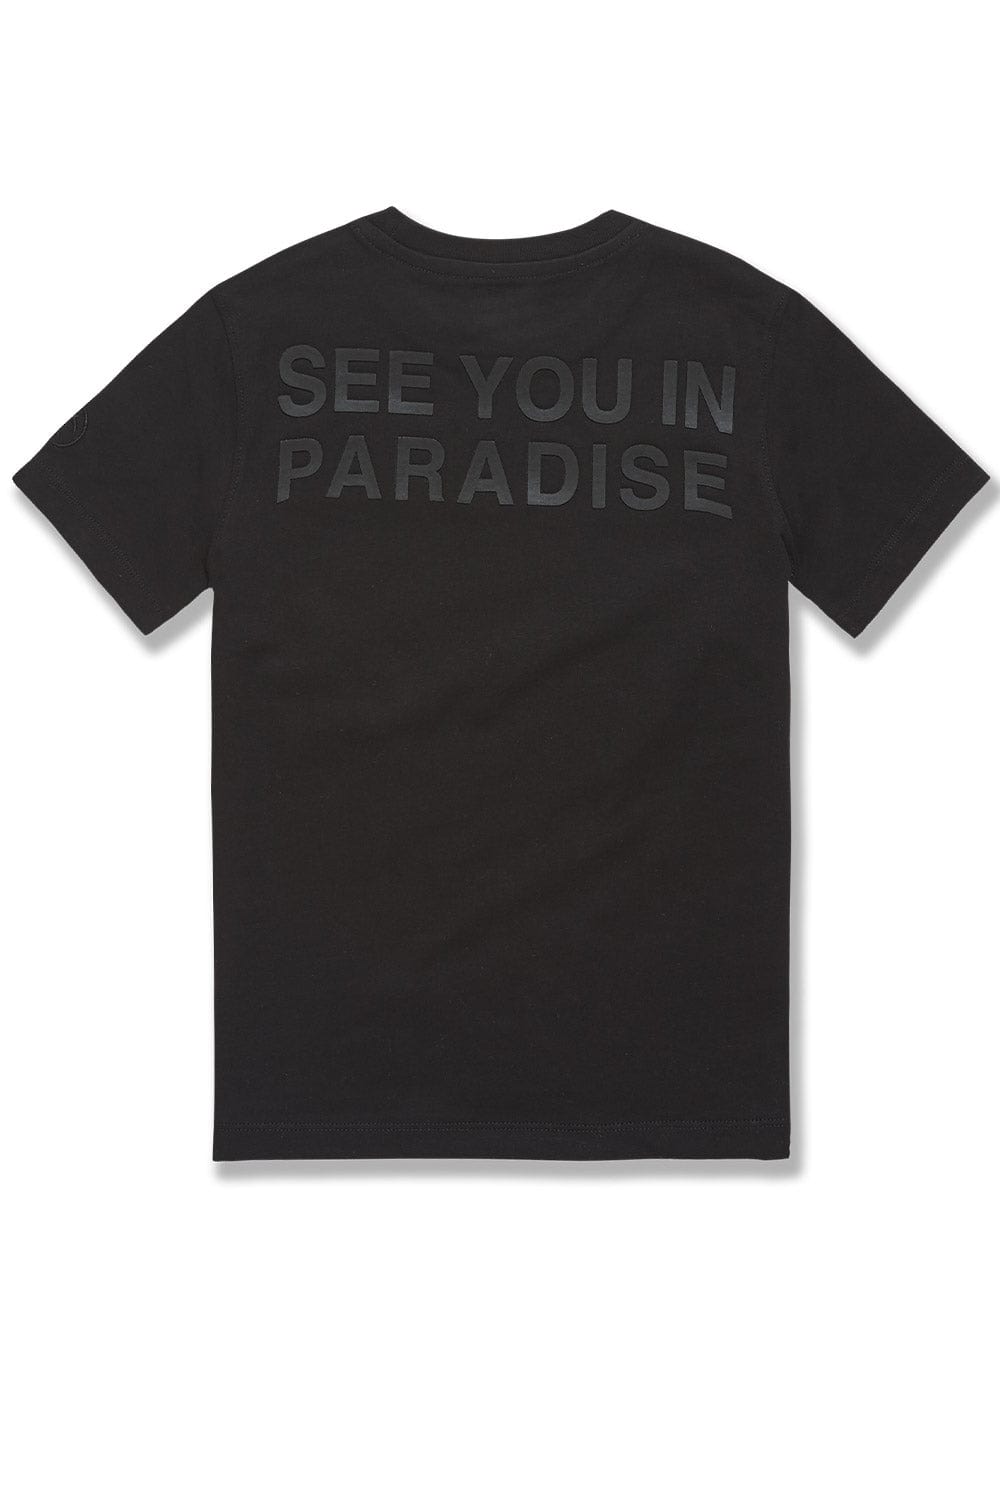 JC Kids Kids Paradise Tonal T-Shirt (Black)